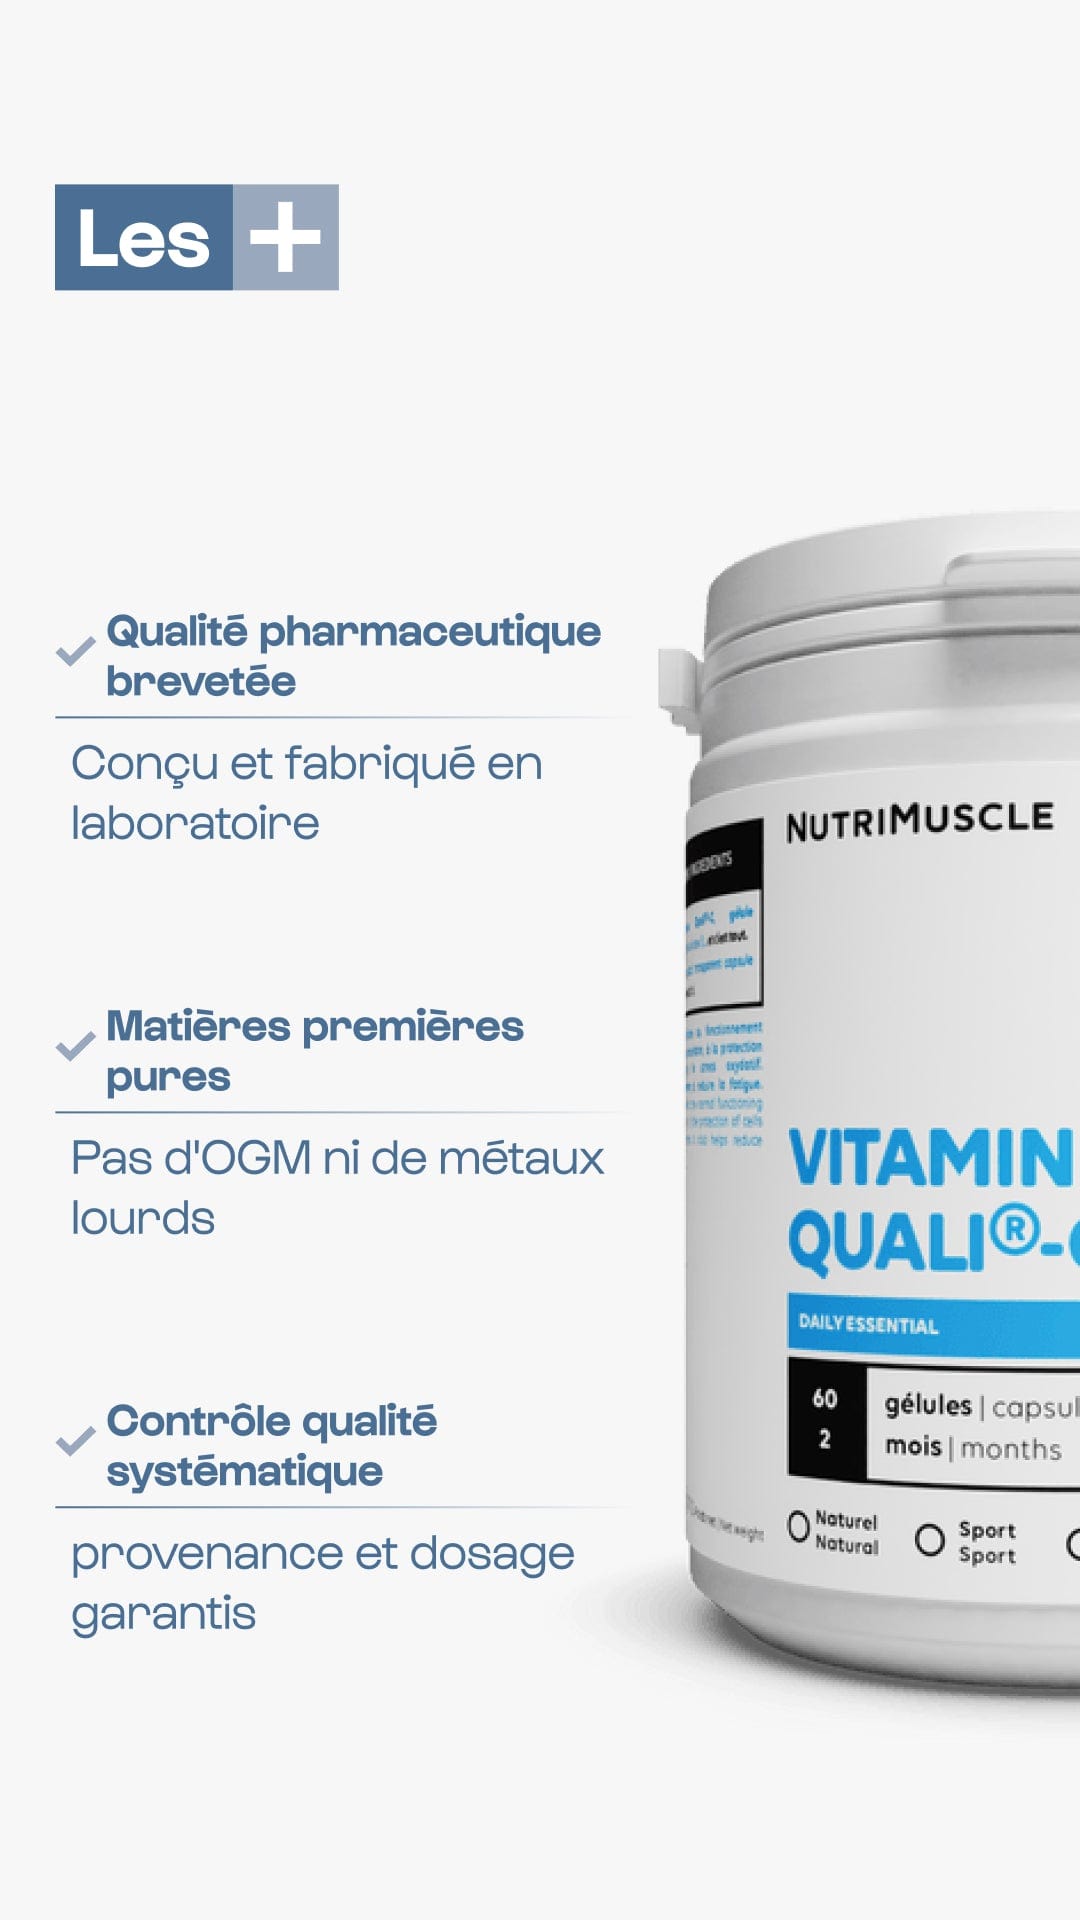 Nutrimuscle Vitamine C Quali®C en poudre